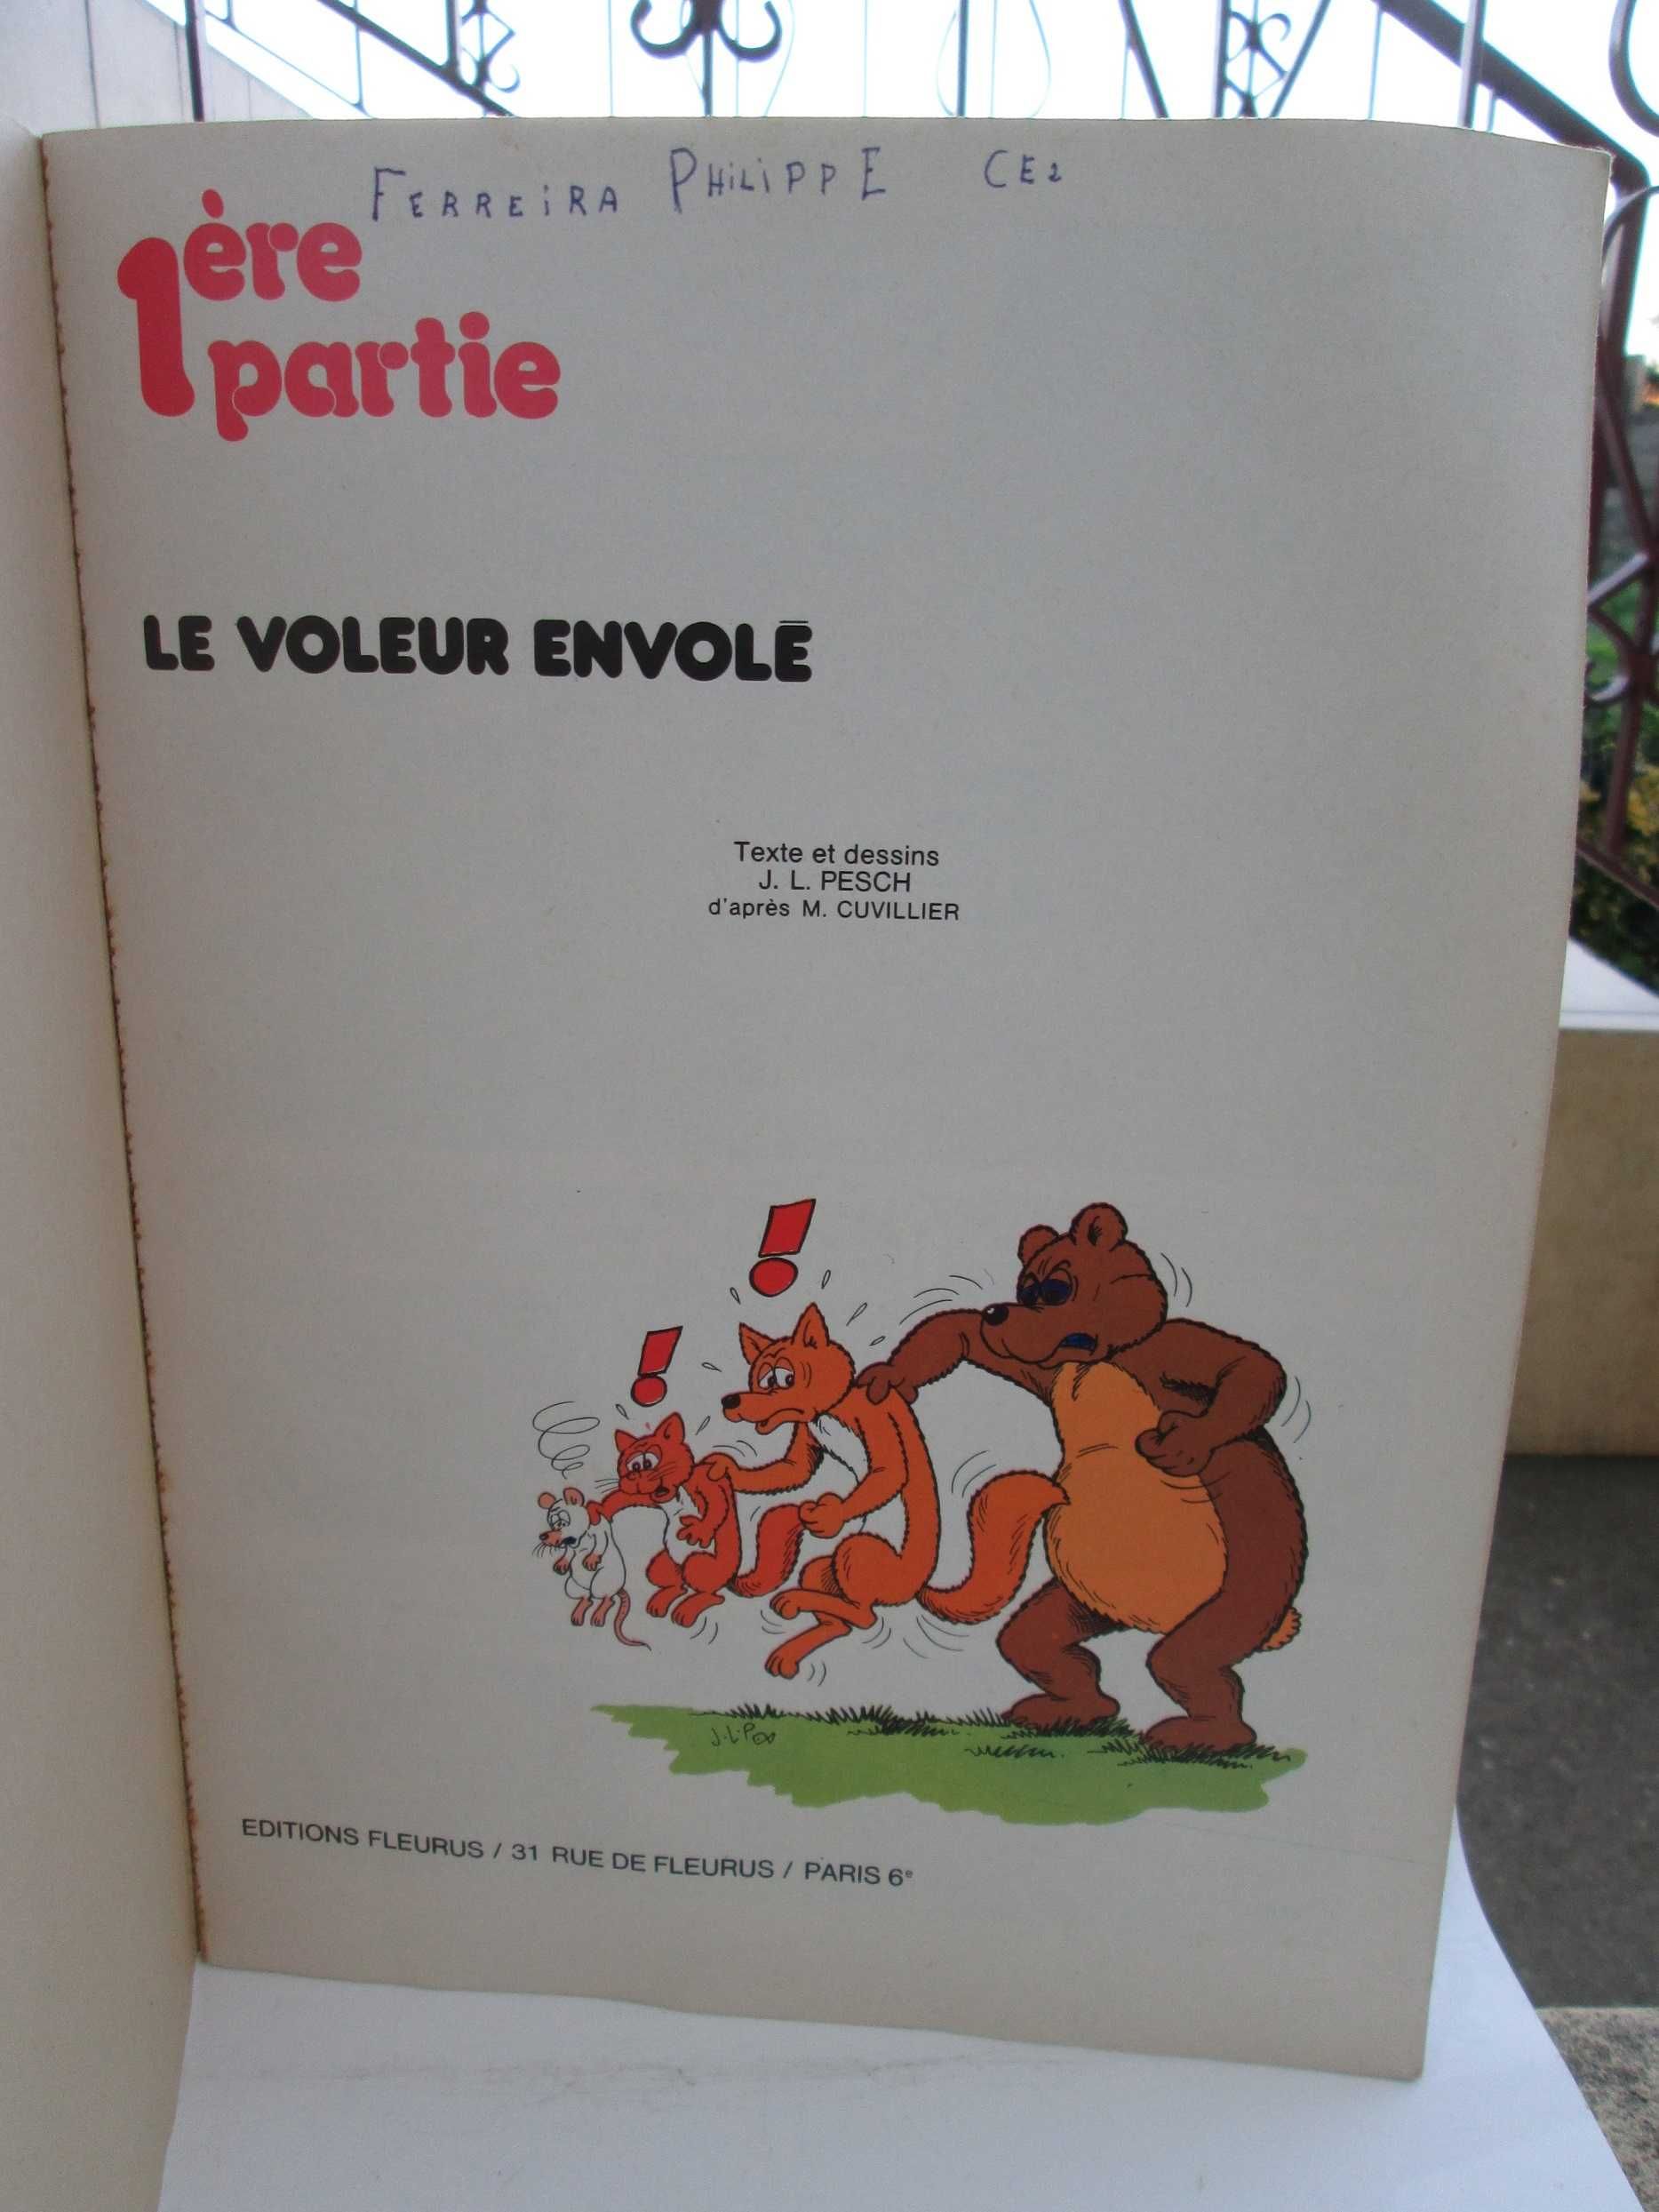 Livro Le voleur envolé, Sylvain et Sylvette 1974